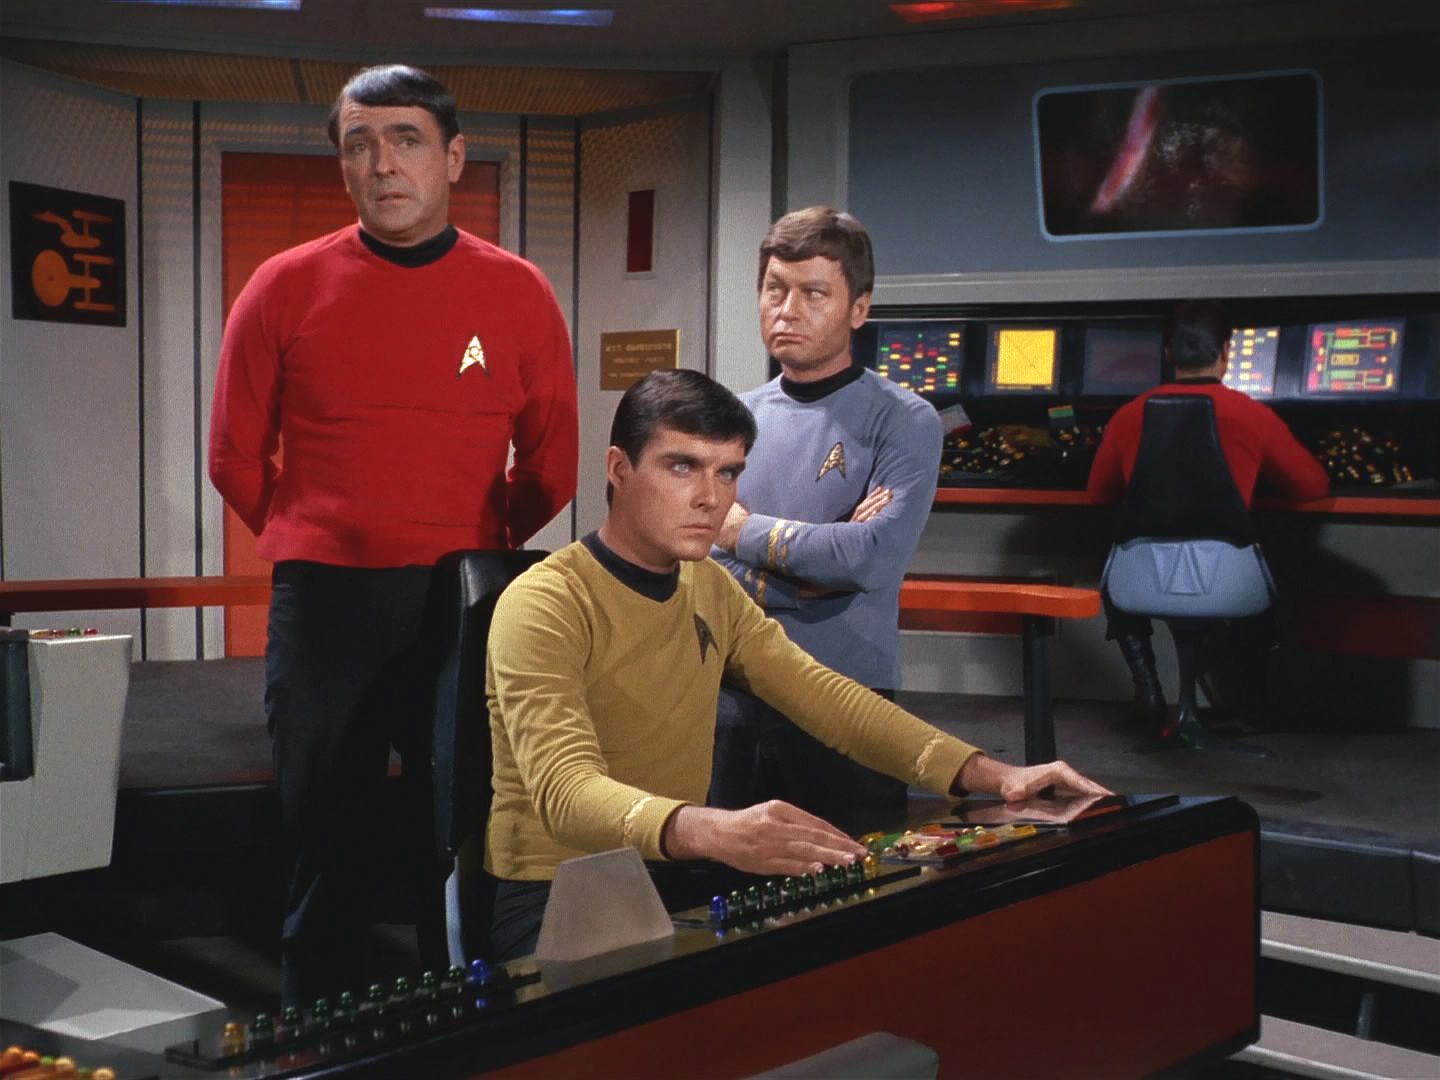 Anan 7 se uchýlil ke lsti, ale na Scottyho nevyzrál. Ten, kdo mu dal rozkaz ke všeobecné dovolené, nebyl kapitán. Navíc začínají na Enterprise střílet z planety.